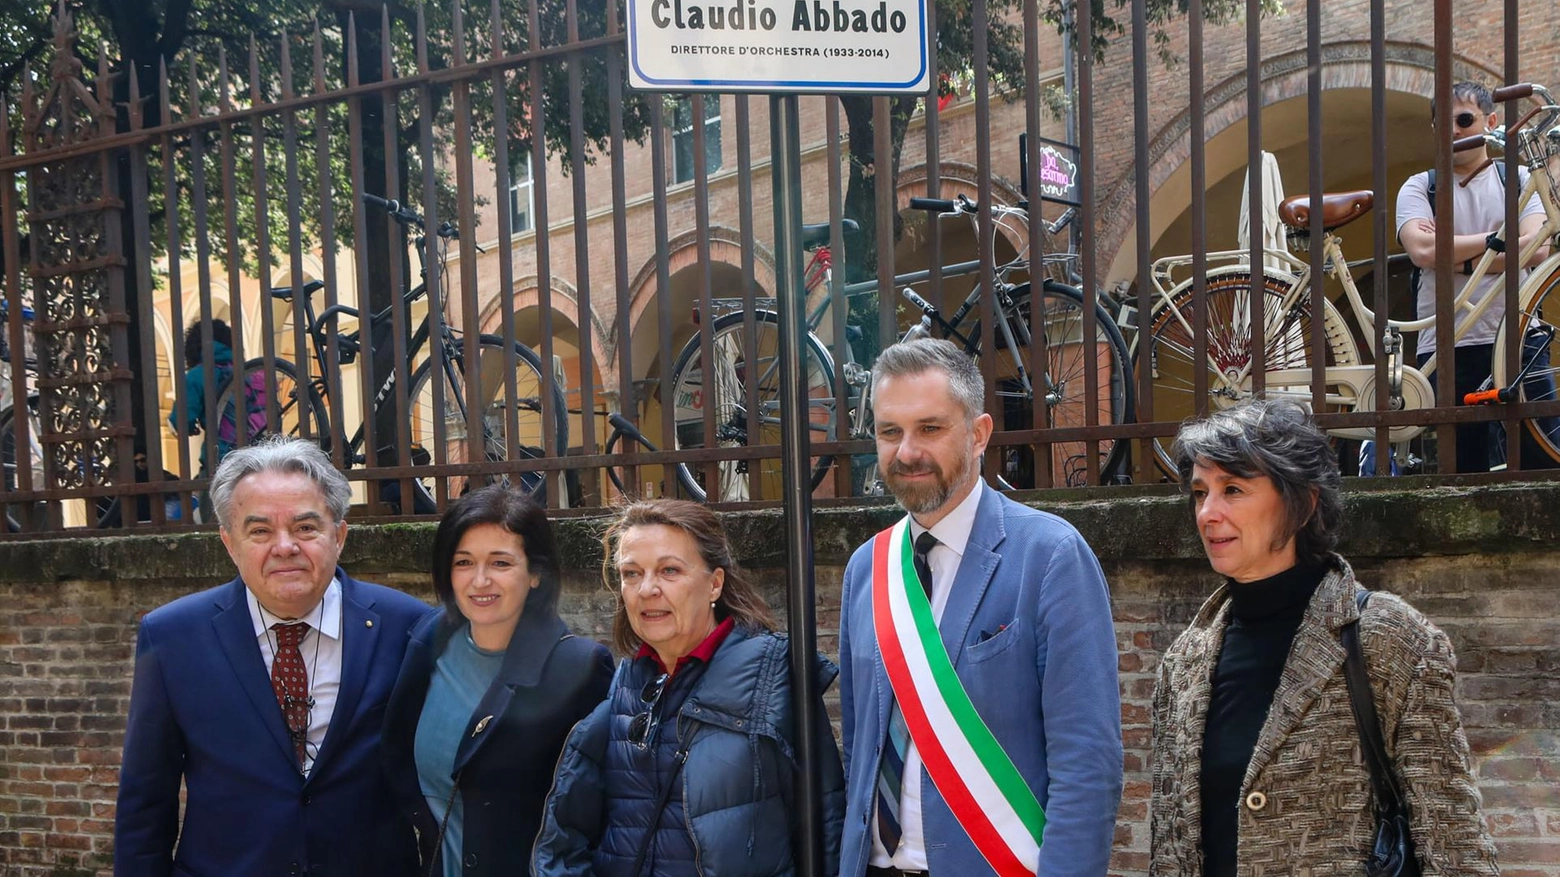 Un giardino per il maestro Abbado: "Bologna ha battuto Milano 1-0"